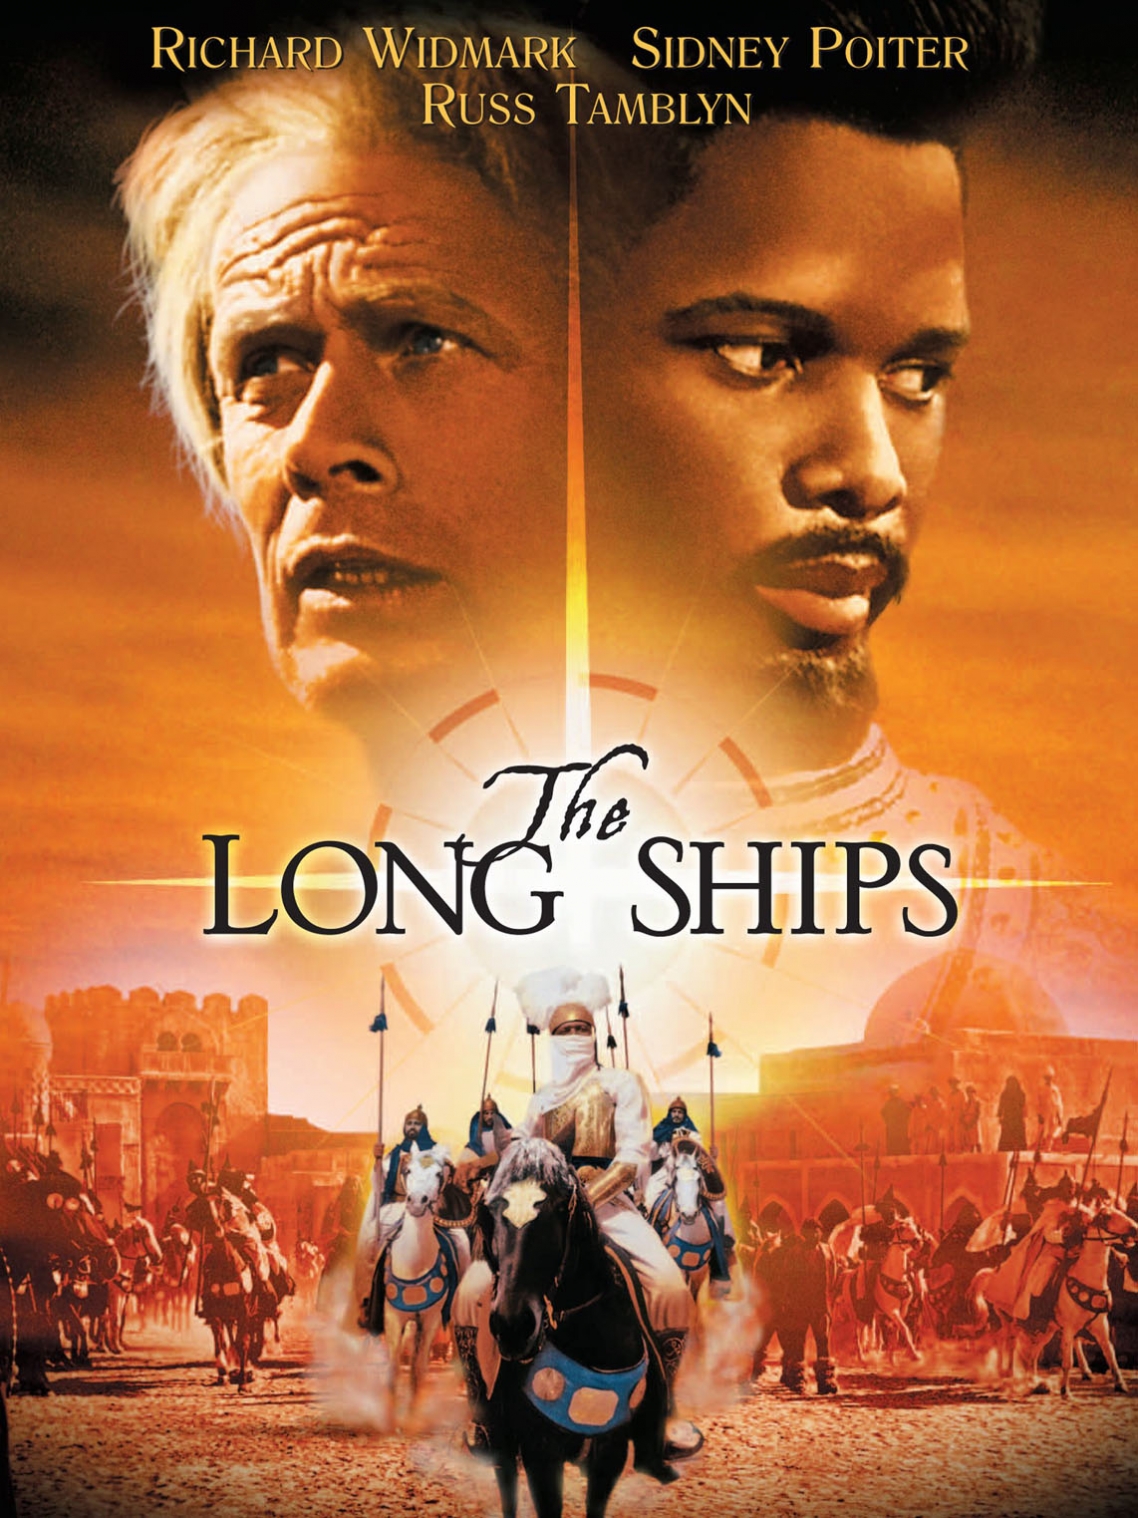 The Long Ships, 1963